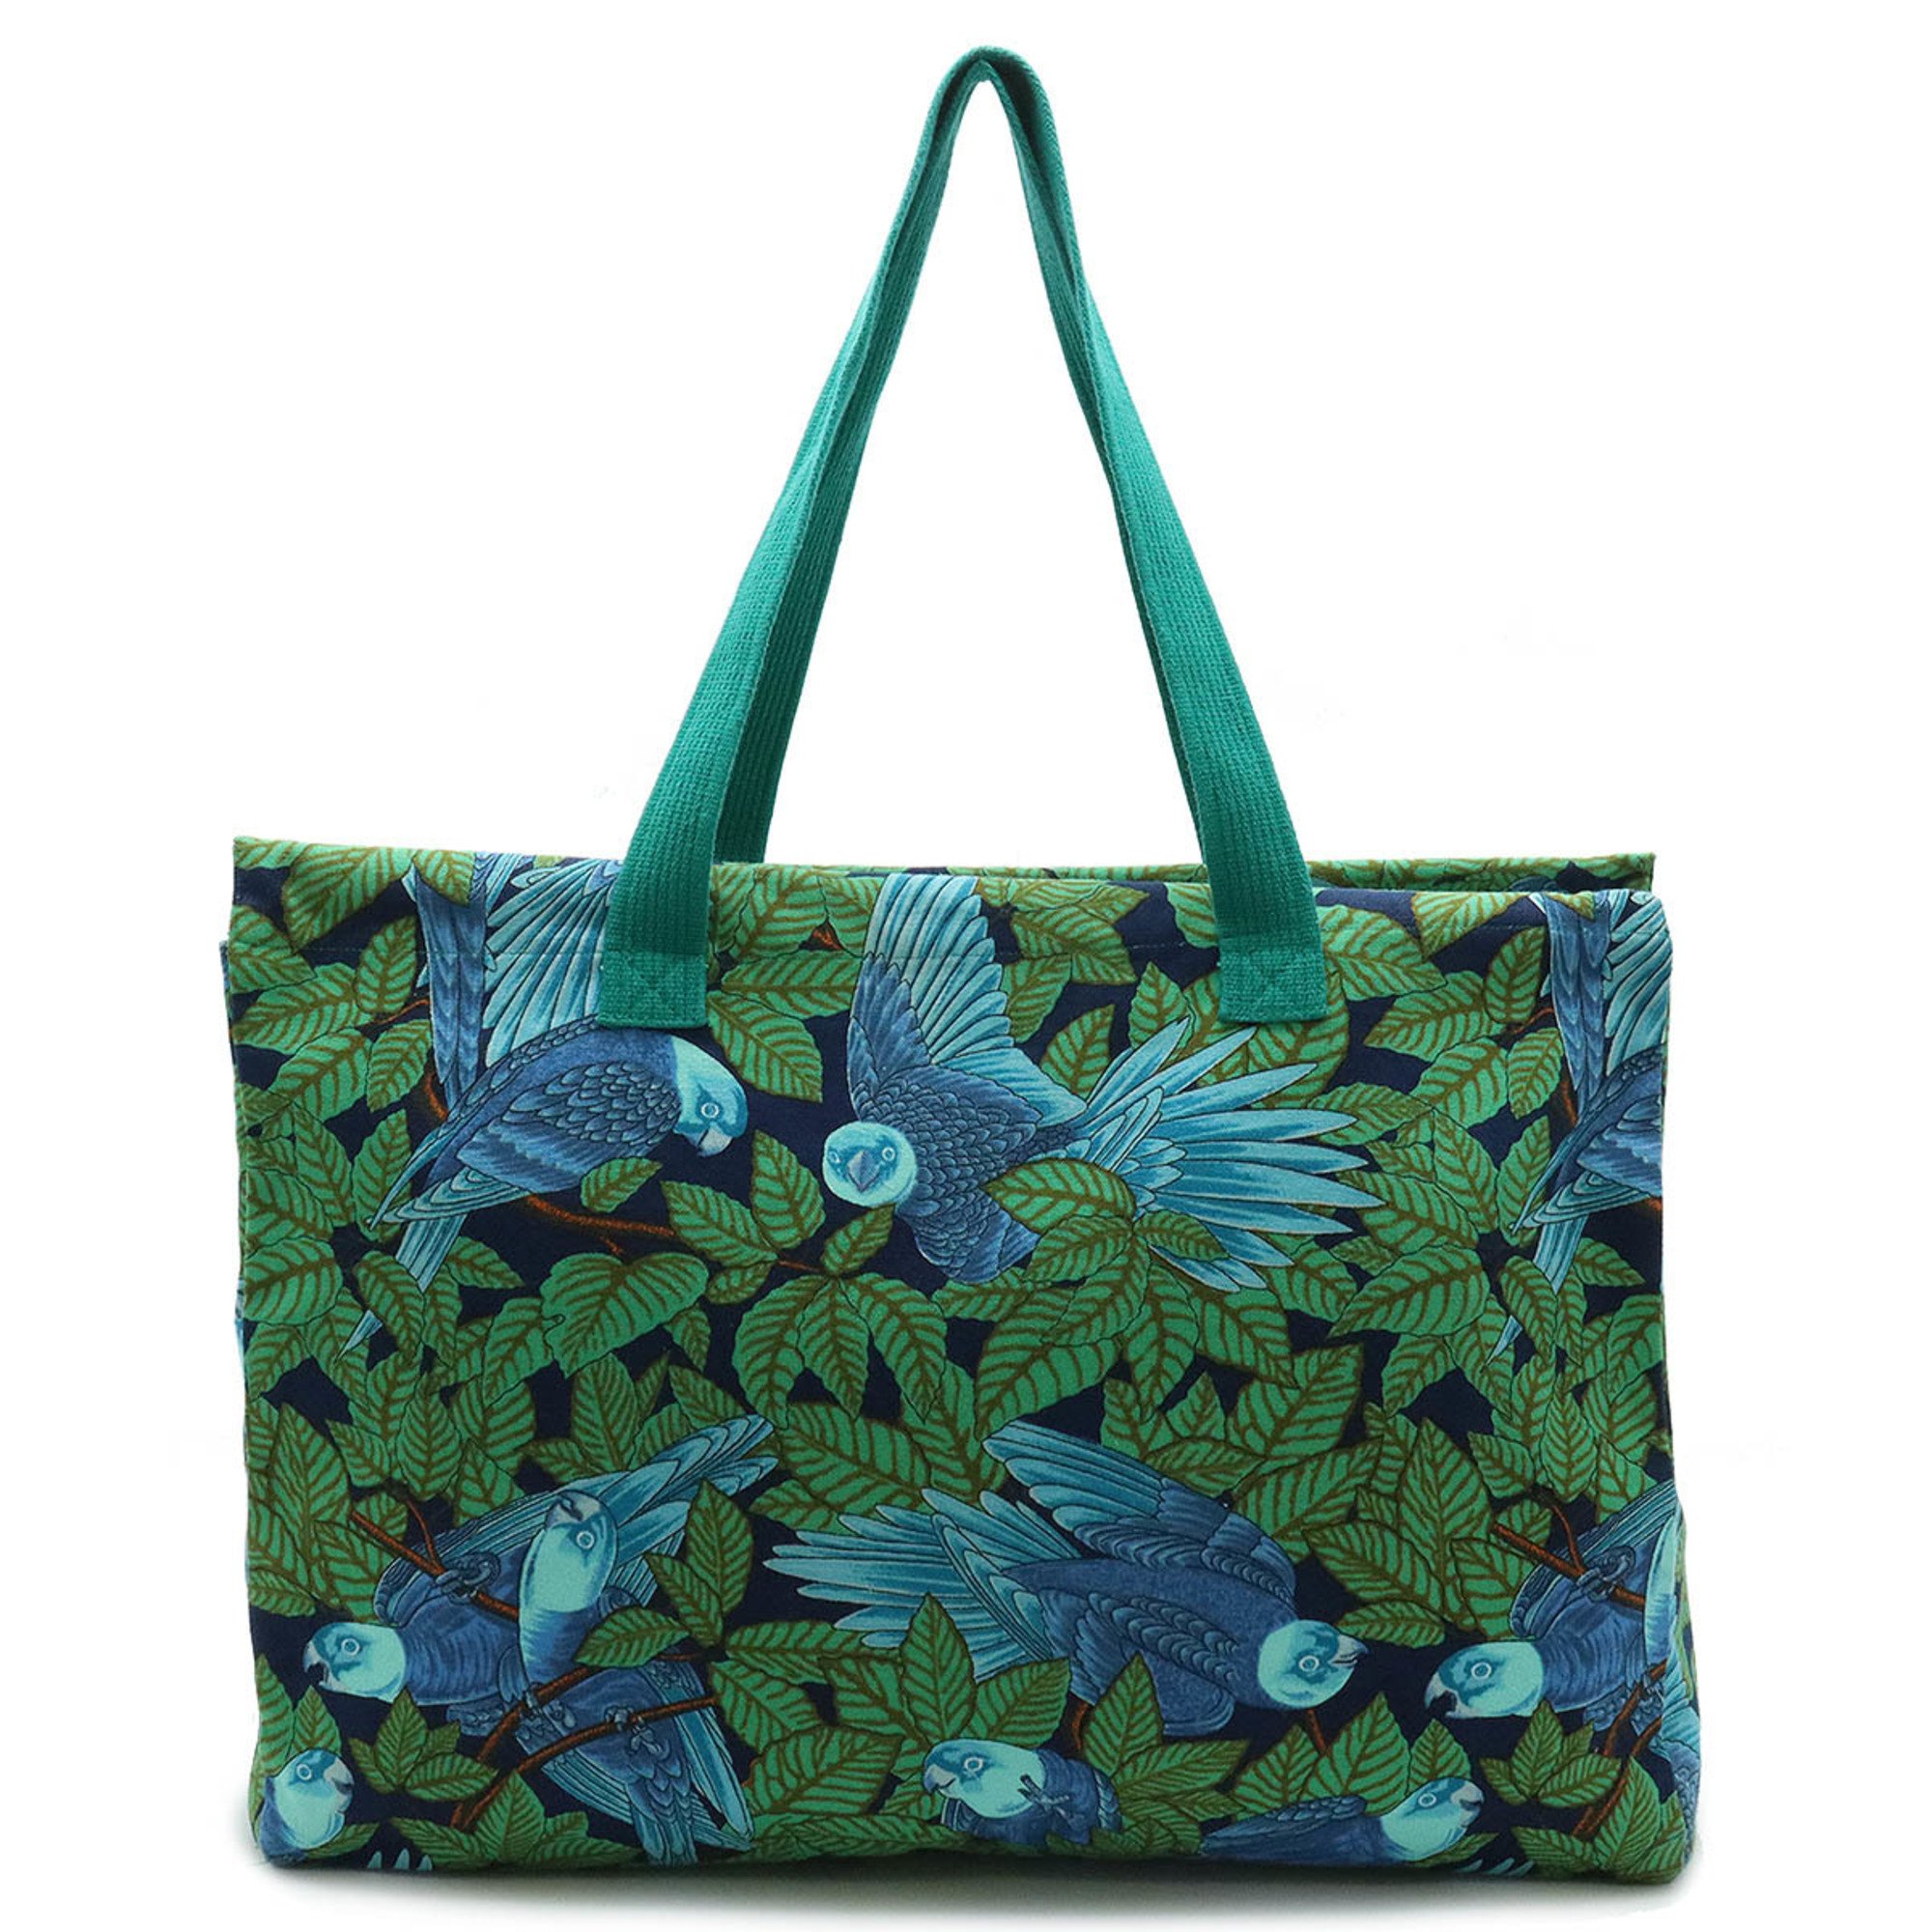 HERMES Hermes Tote Bag Large Shoulder Bird Motif Pattern Canvas Green Blue